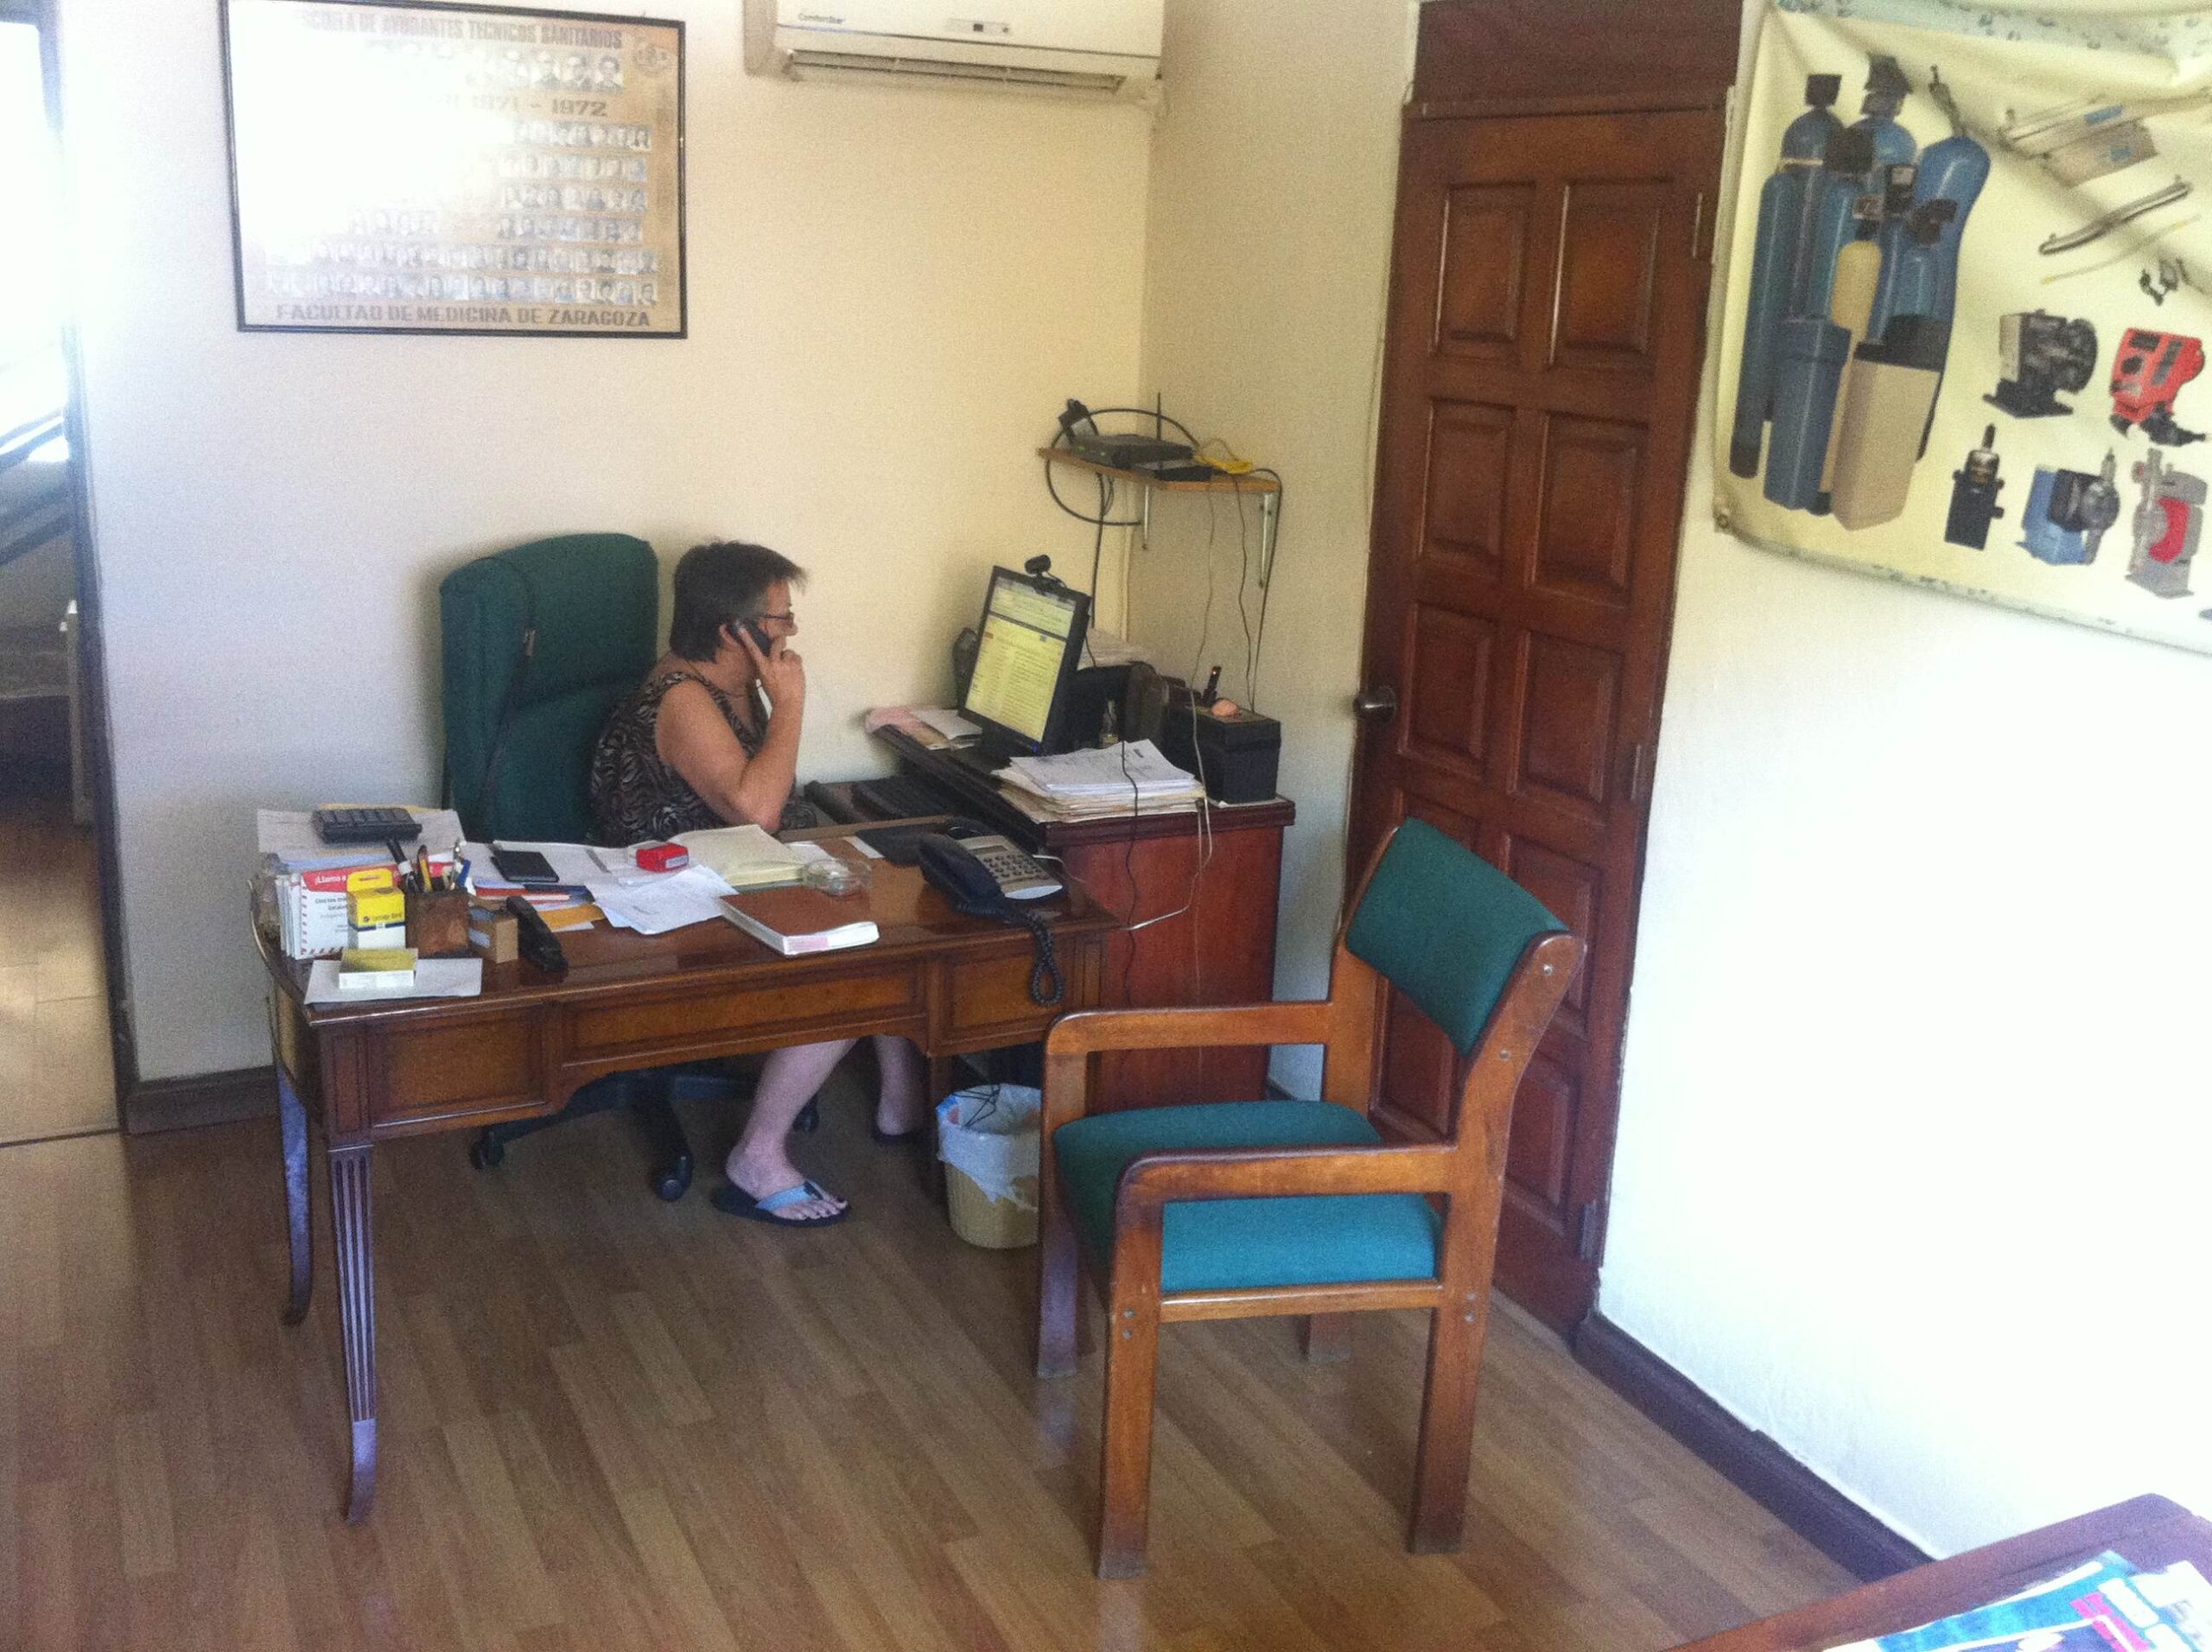 Doña Ana gestionando el trabajo del día en la oficina